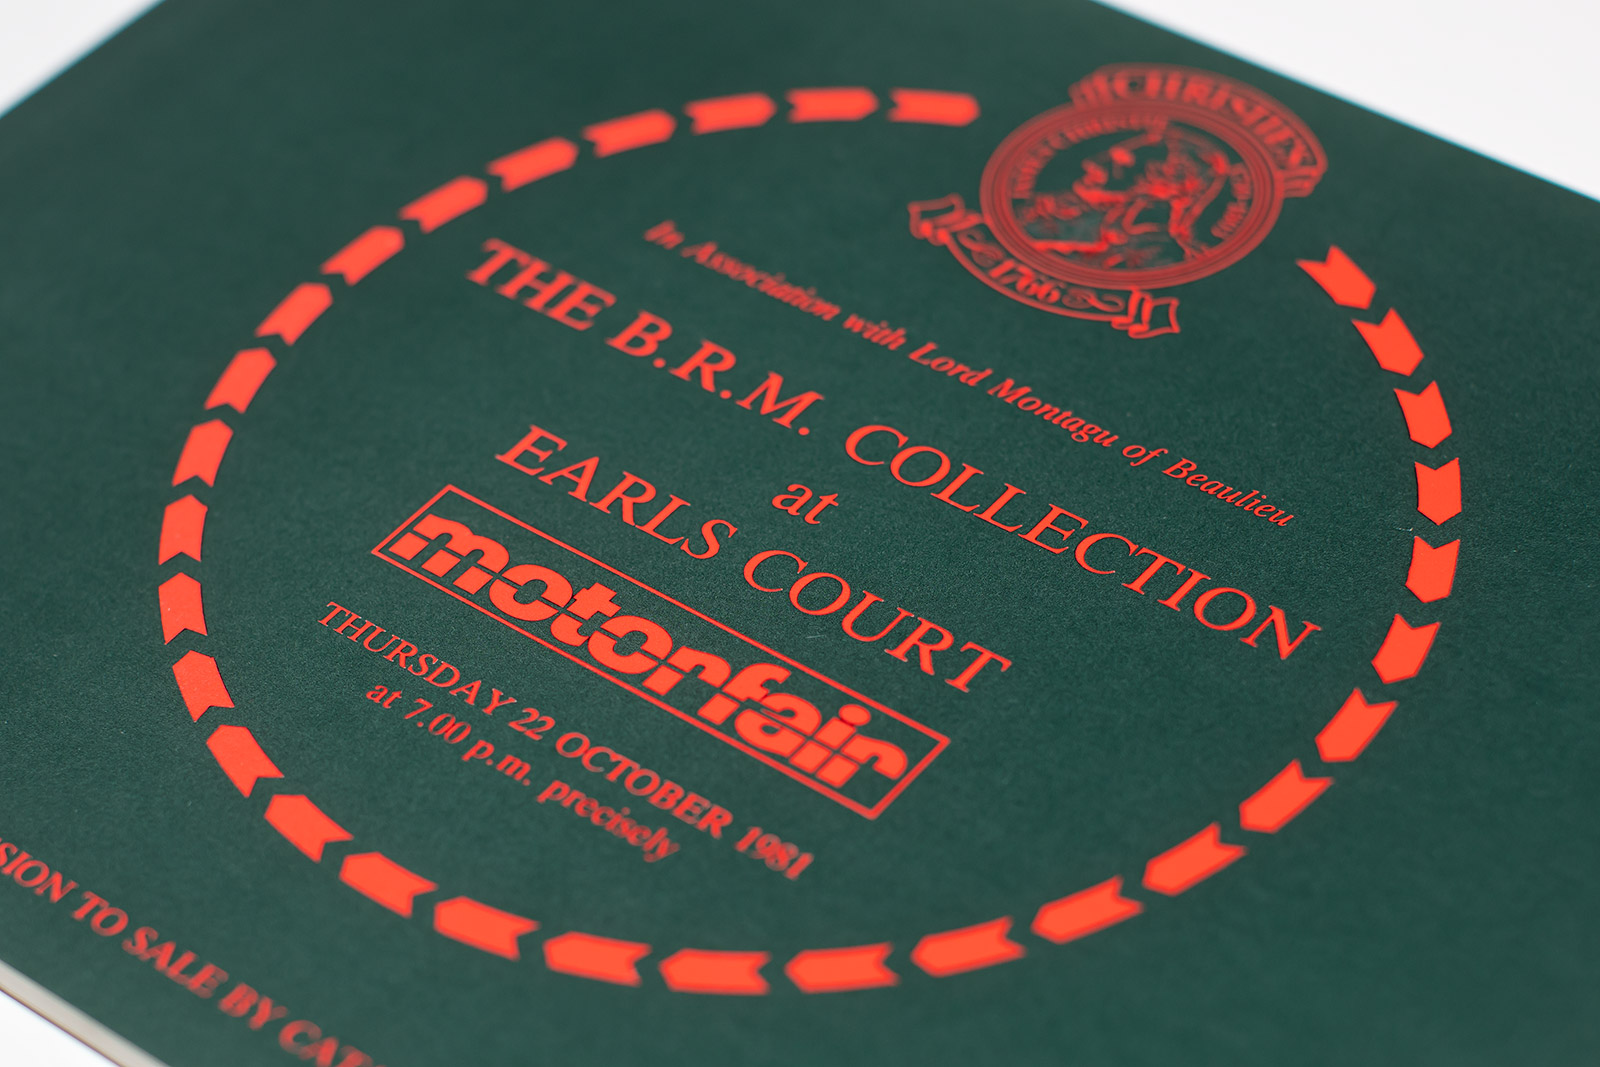 Broschüre zur B.R.M Collection